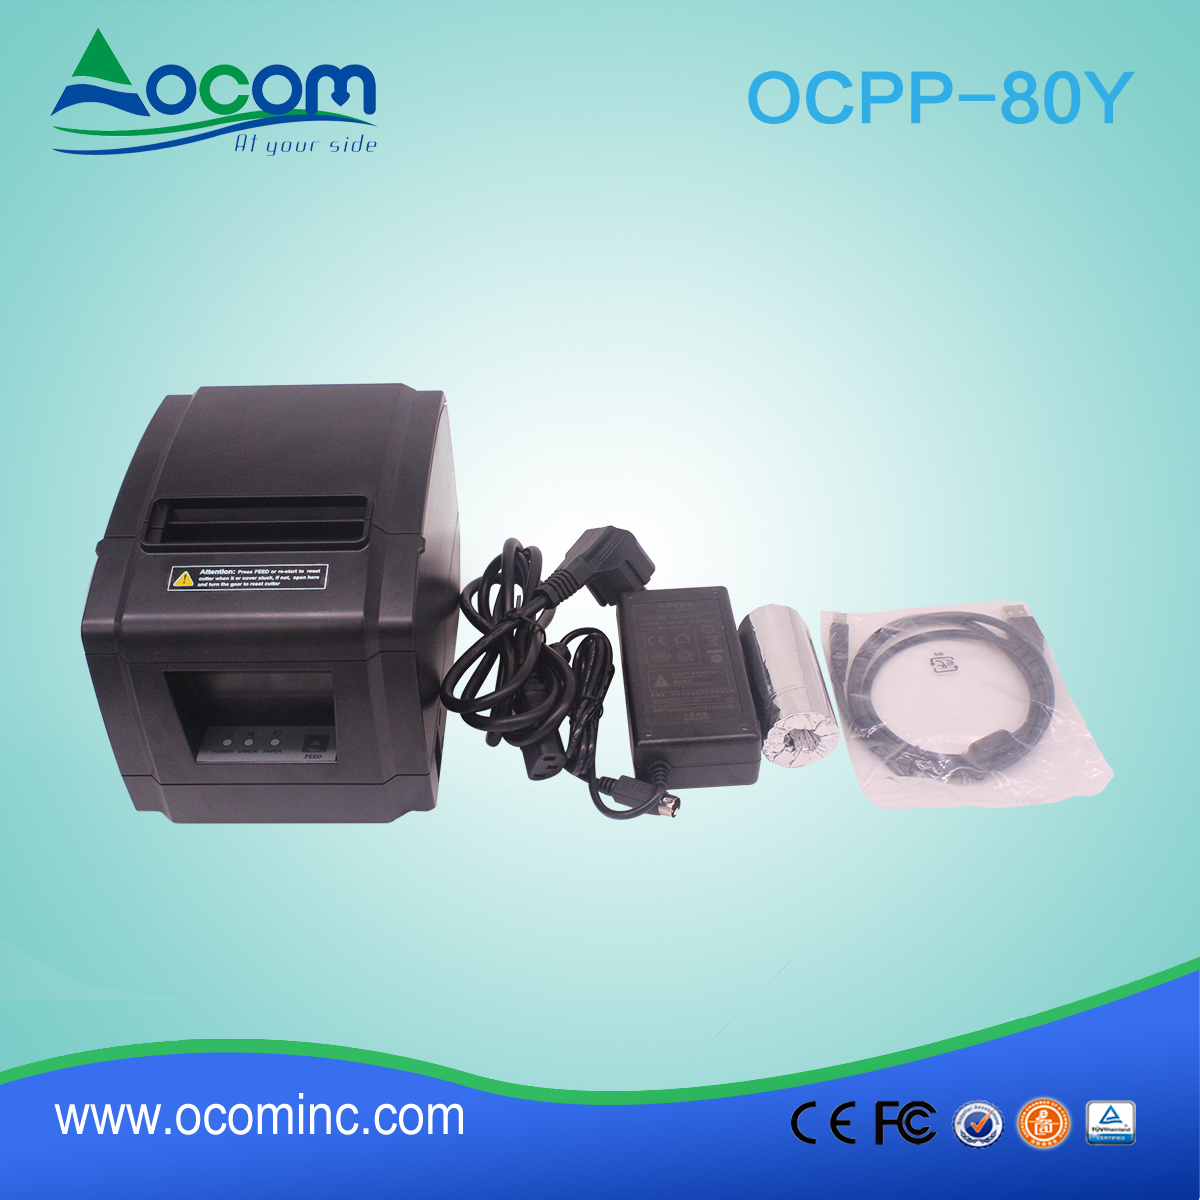 OCPP-80Y-China maakte een laag verloren 80 mm thermische printer